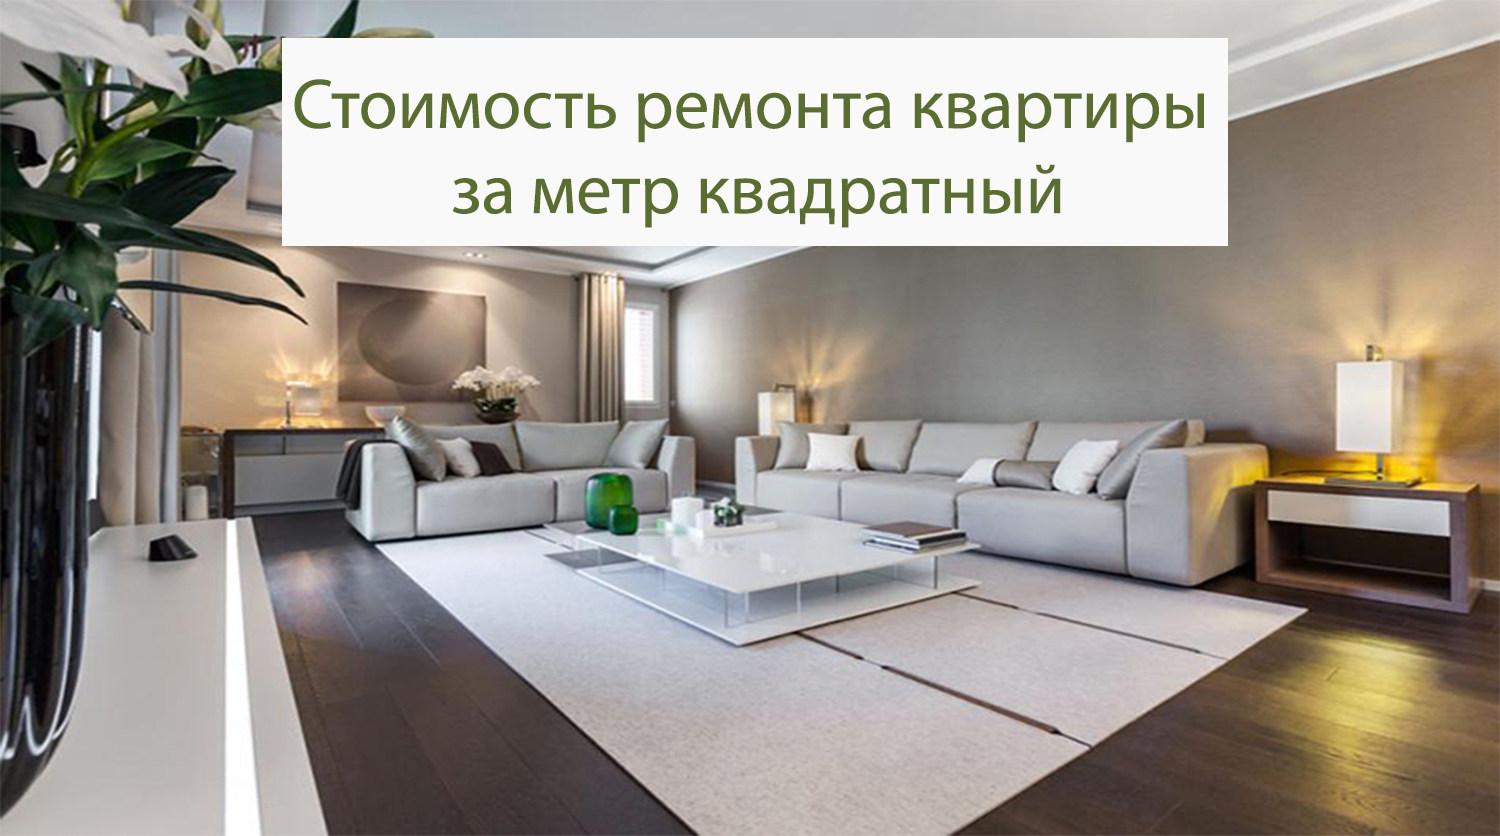 Стоимость ремонта квартиры в Москве за метр квадратный